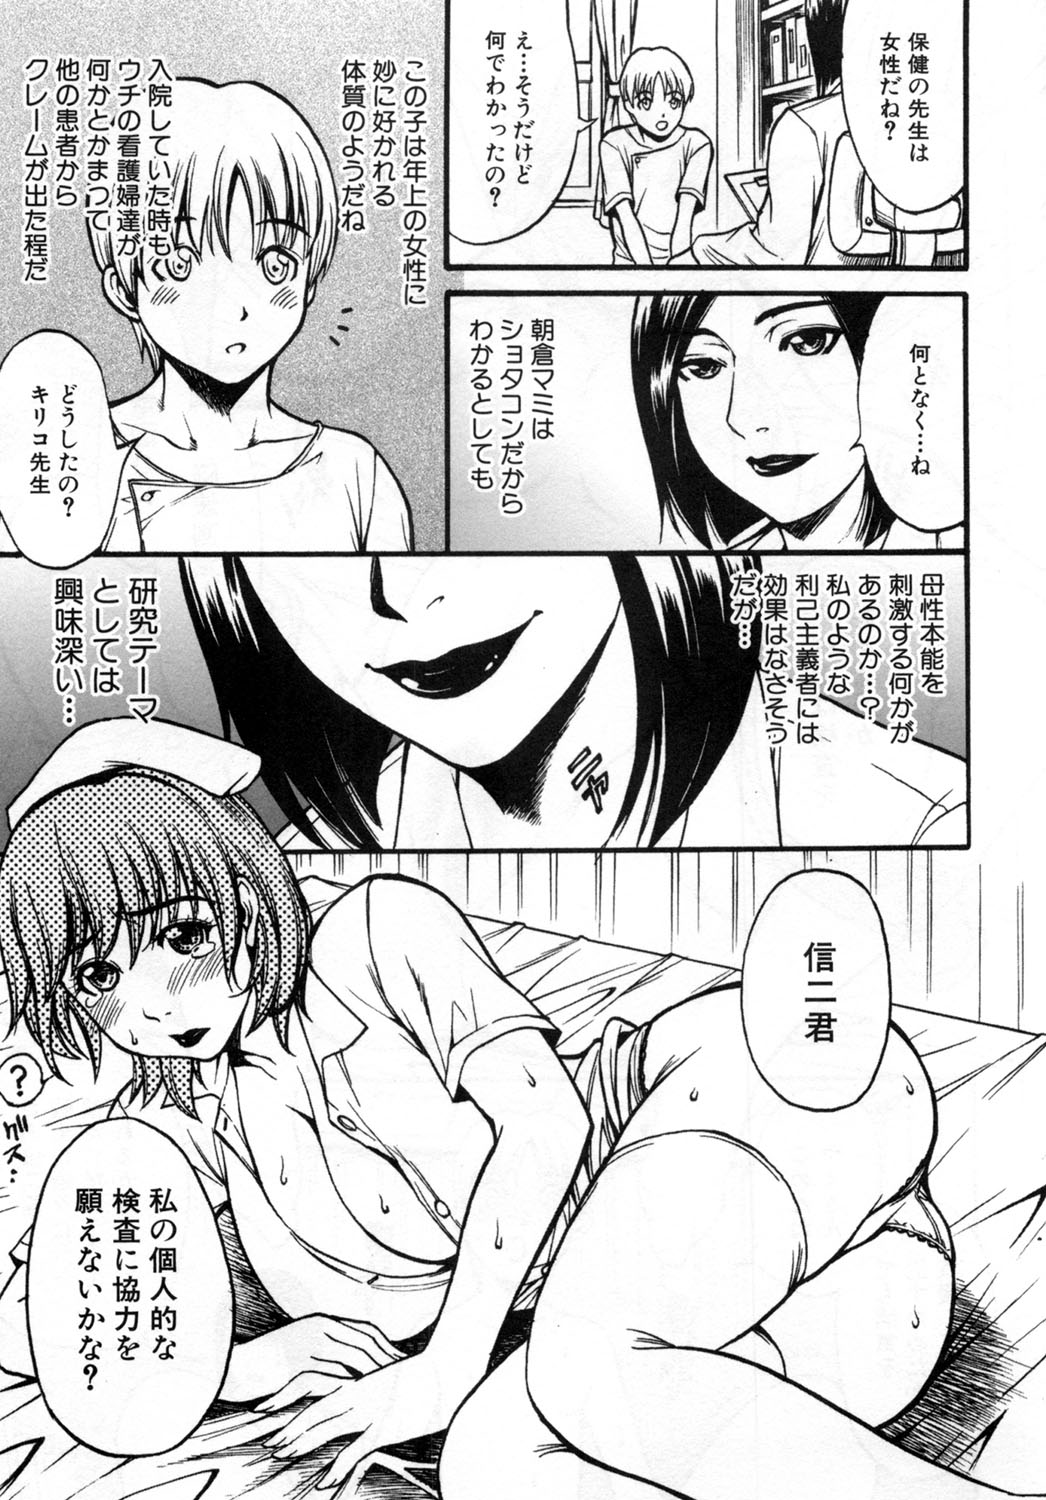 [Kuniaki Kitakata] Boku no Mama (My Mom) Chapters 1-4 page 49 full